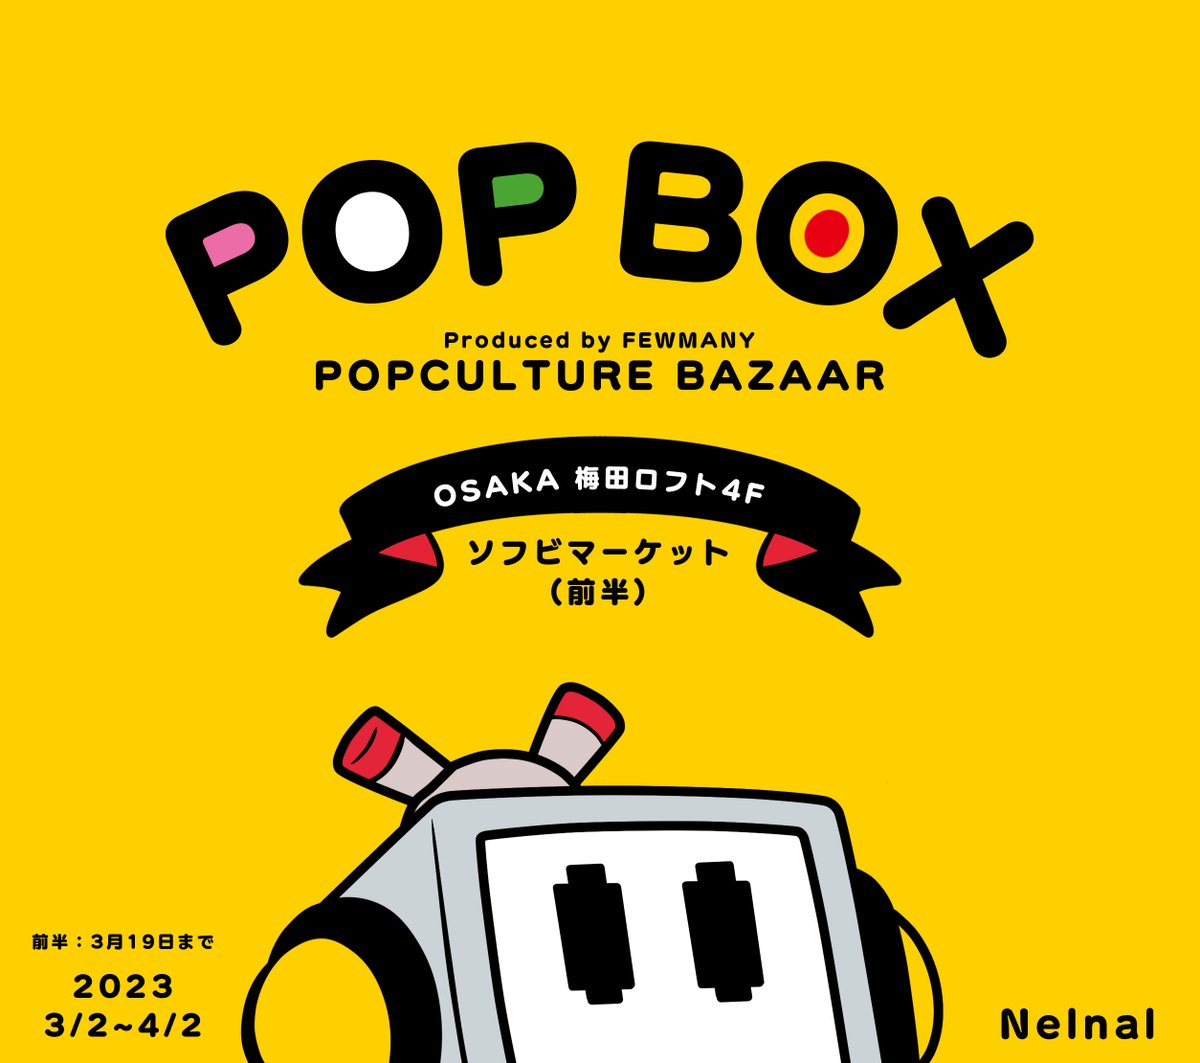 「【お知らせ】POPBOX OSAKAに初参加させていただきますソフビマーケット前」|Nelnal🌸身近なモンスター展@4月1日~10日までのイラスト